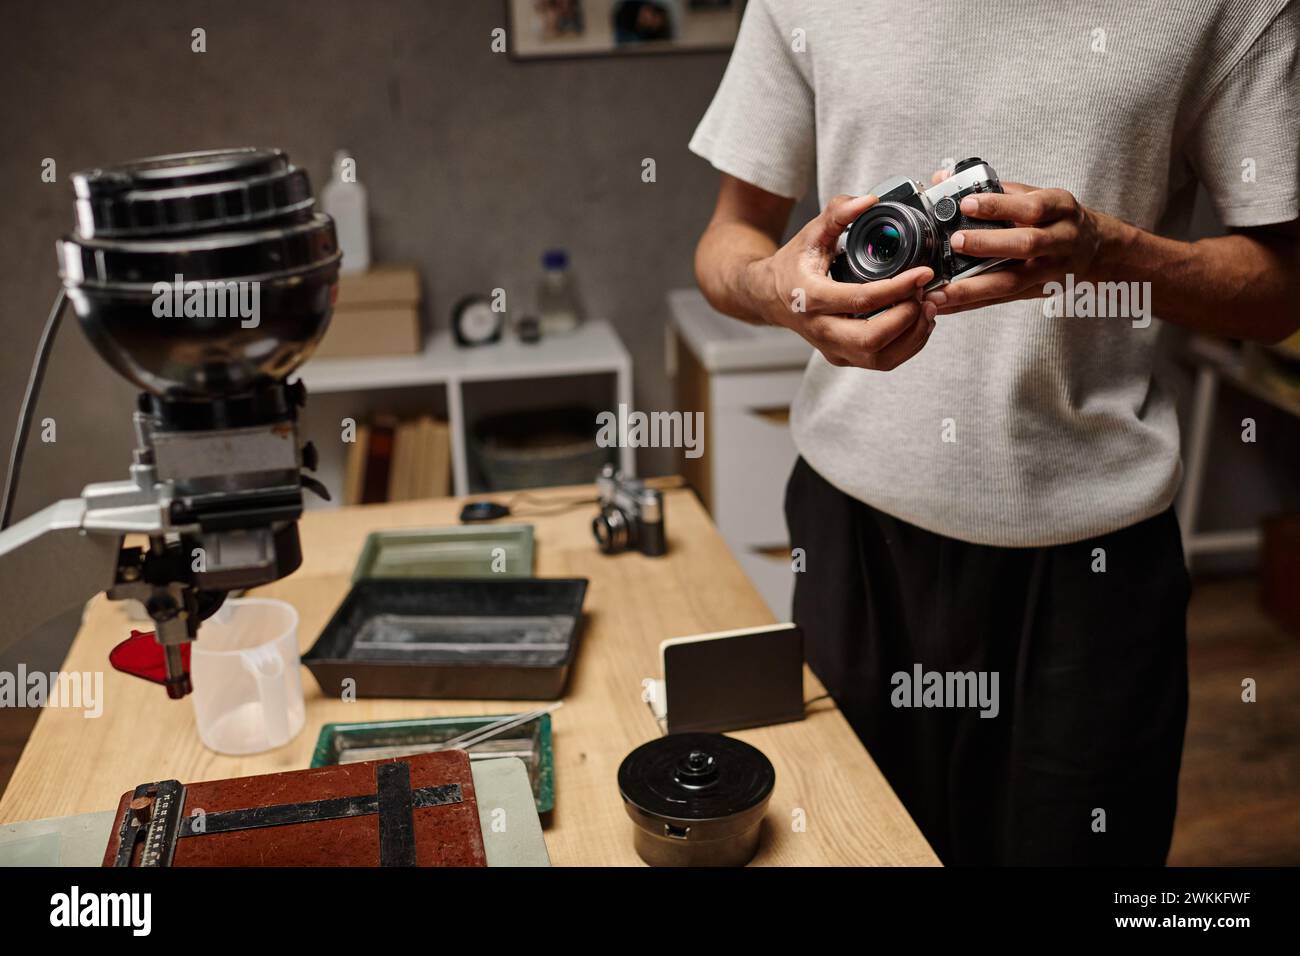 Beschnittener schwarzer Mann, der eine analoge Kamera hält, während er in einem Fotolabor steht, Filmfotografie Stockfoto